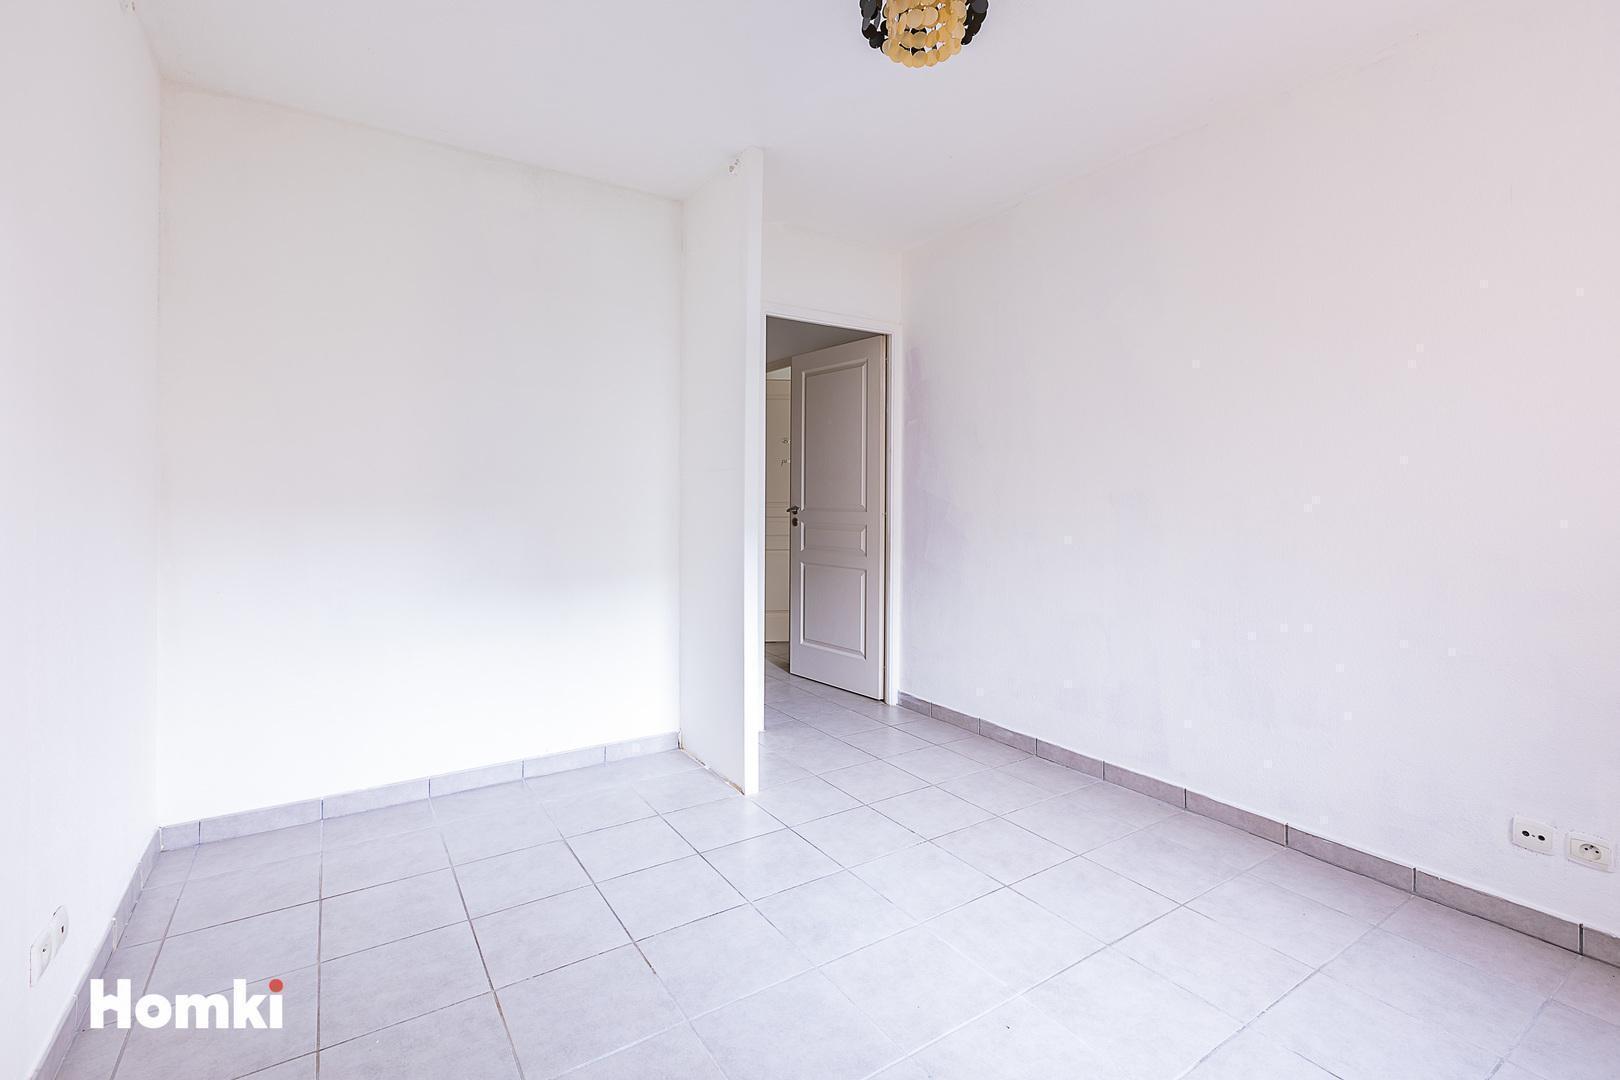 Homki - Vente Appartement  de 44.0 m² à Agde 34300